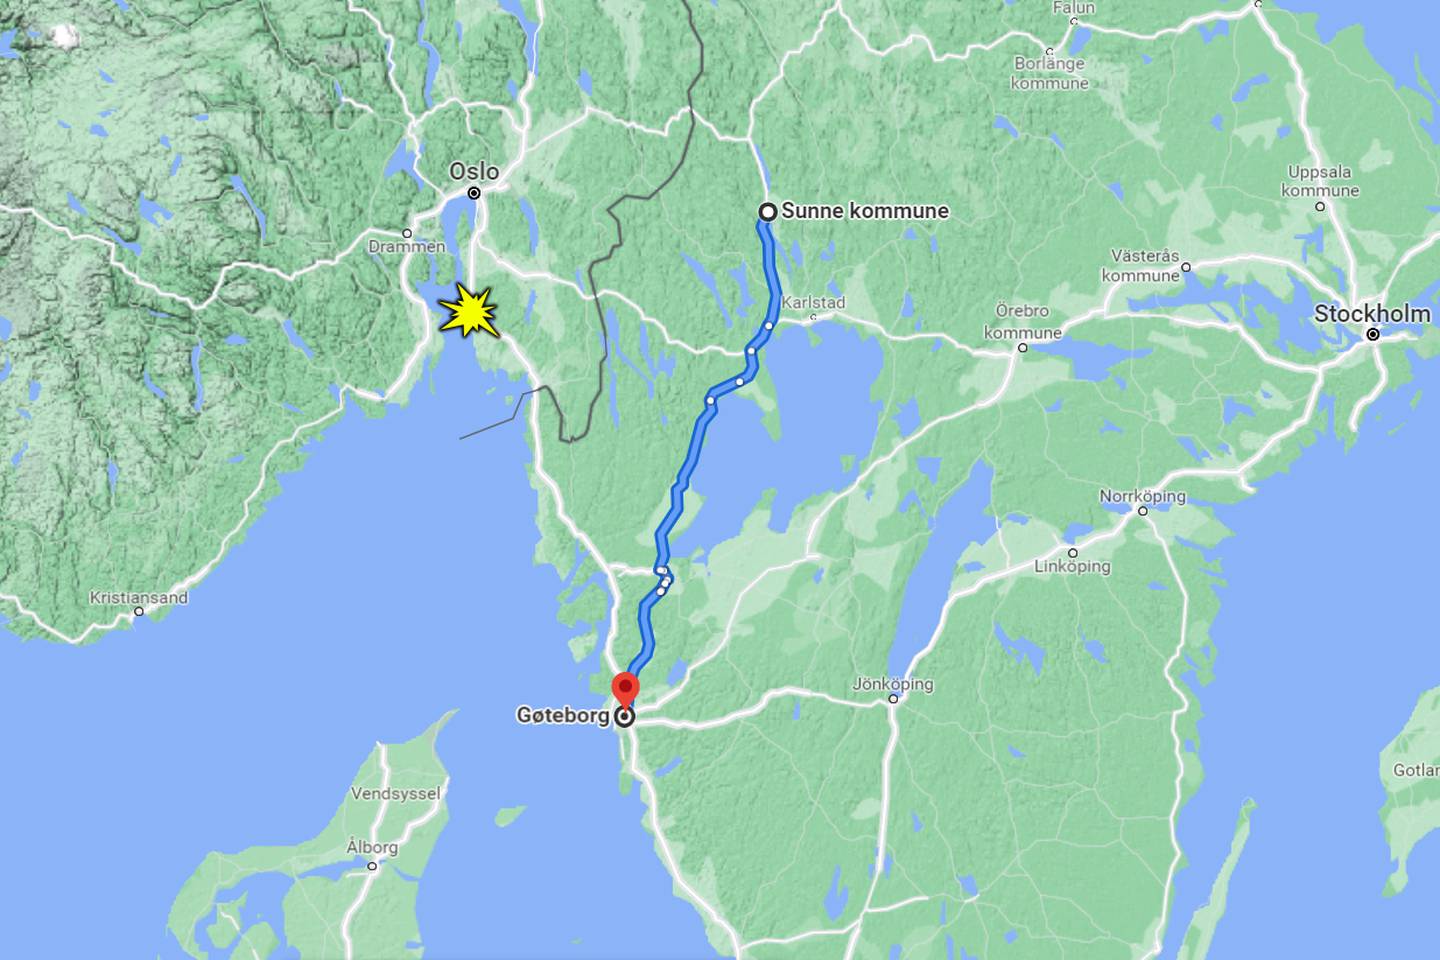 Svensken forklarte at han skulle kjøre fra Sunne til Gøteborg, men endte likevel opp med å krasje i Moss (gult felt).